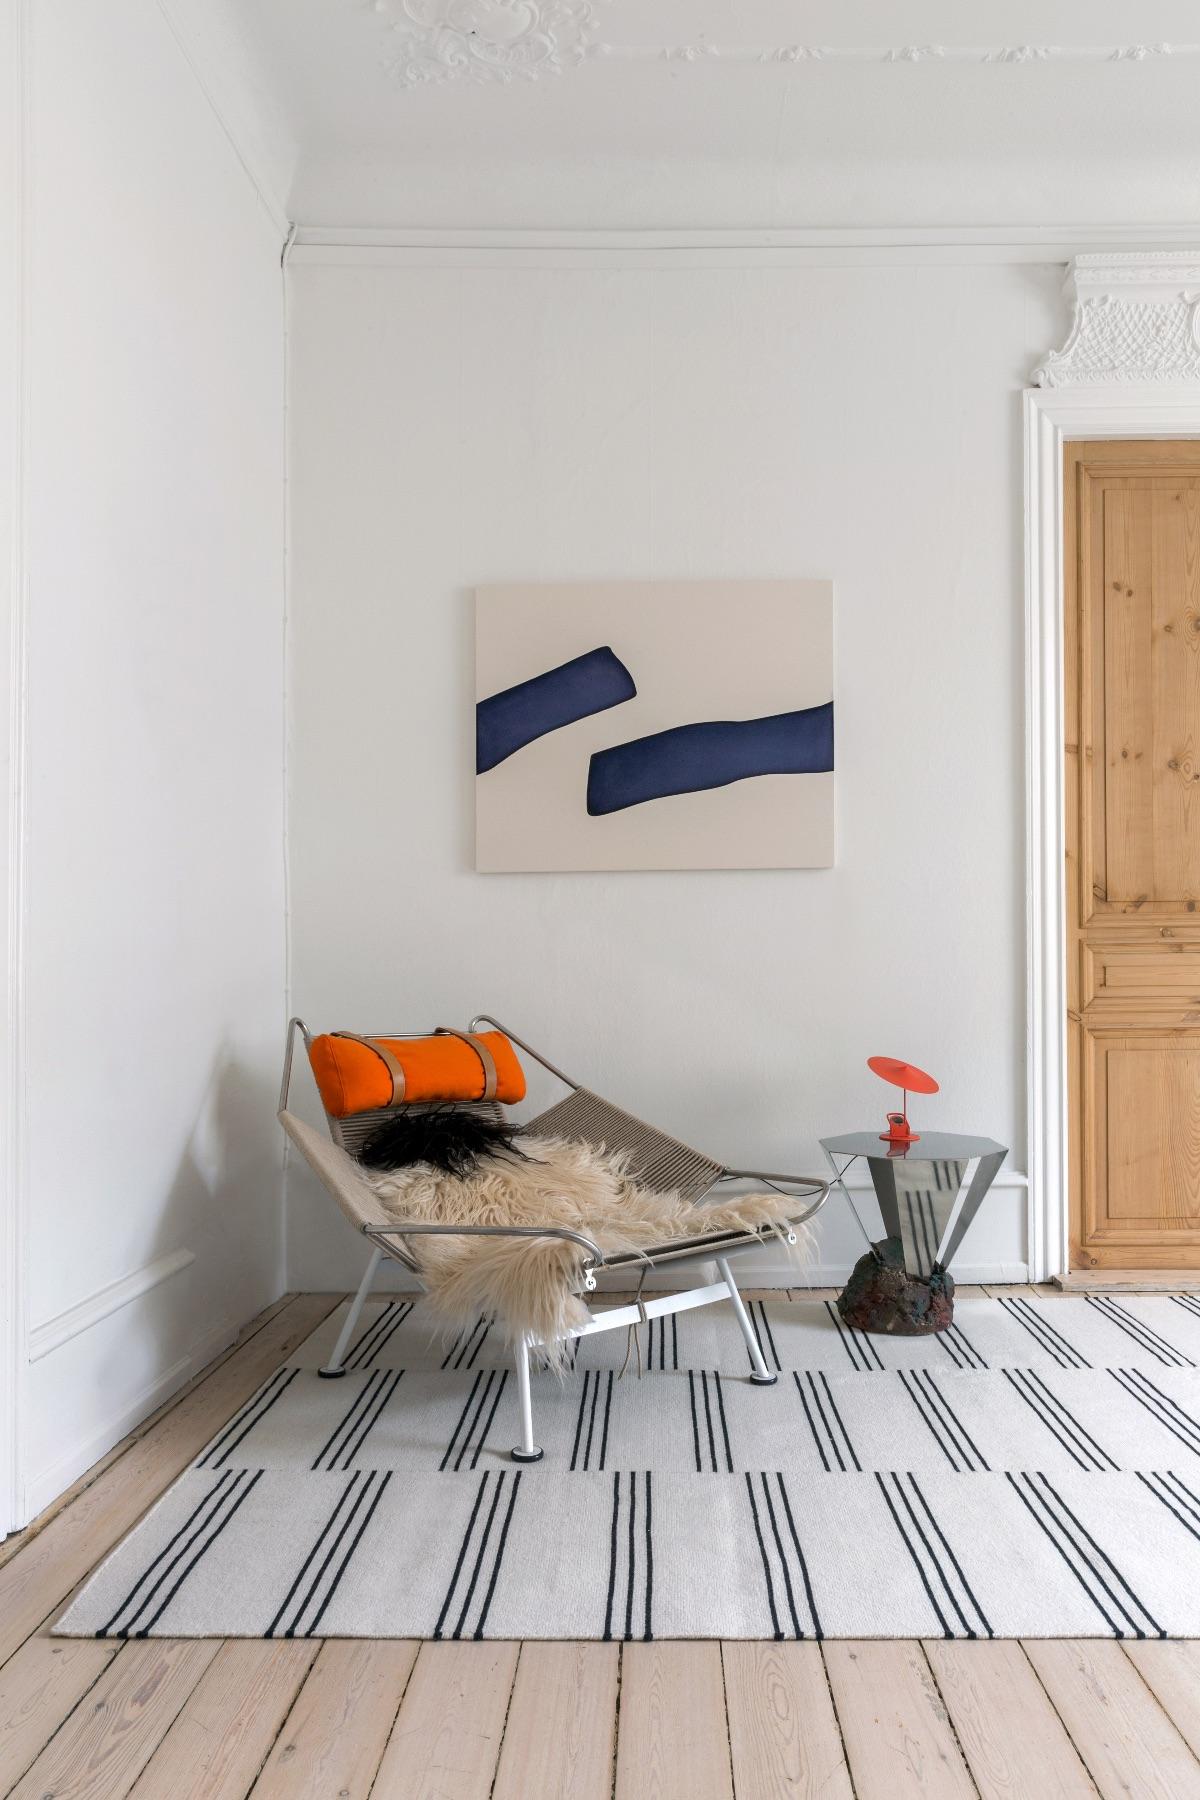 Stripes cream/black est un tapis moderne en Dhurrie/Kilim au design Scandinavian.
Veuillez noter que les délais de livraison peuvent varier selon la taille et vont de 6 jours à 9 semaines.

Les rayures à motif de briques donnent au tapis une